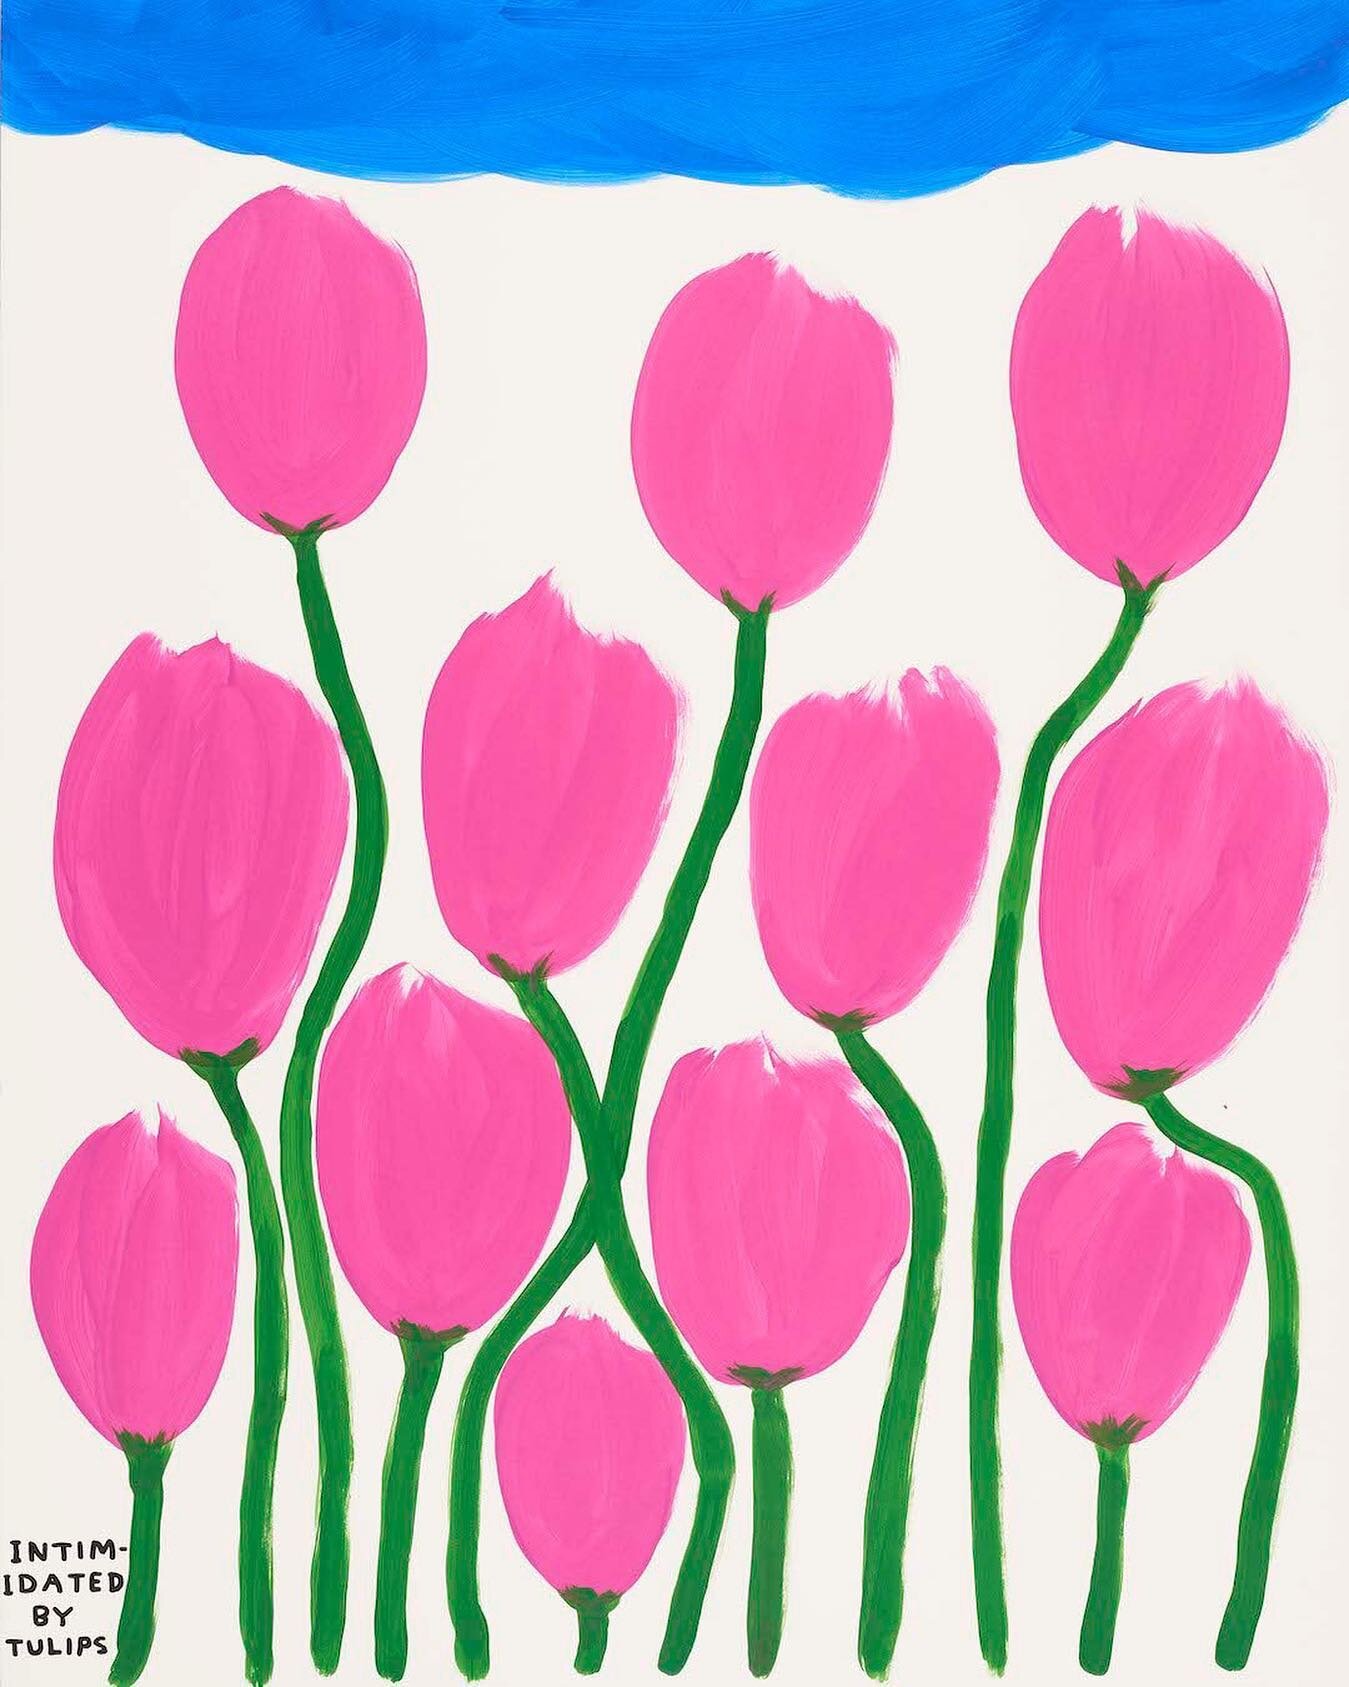 Tulips by @davidshrigley 🌷🌷🌷